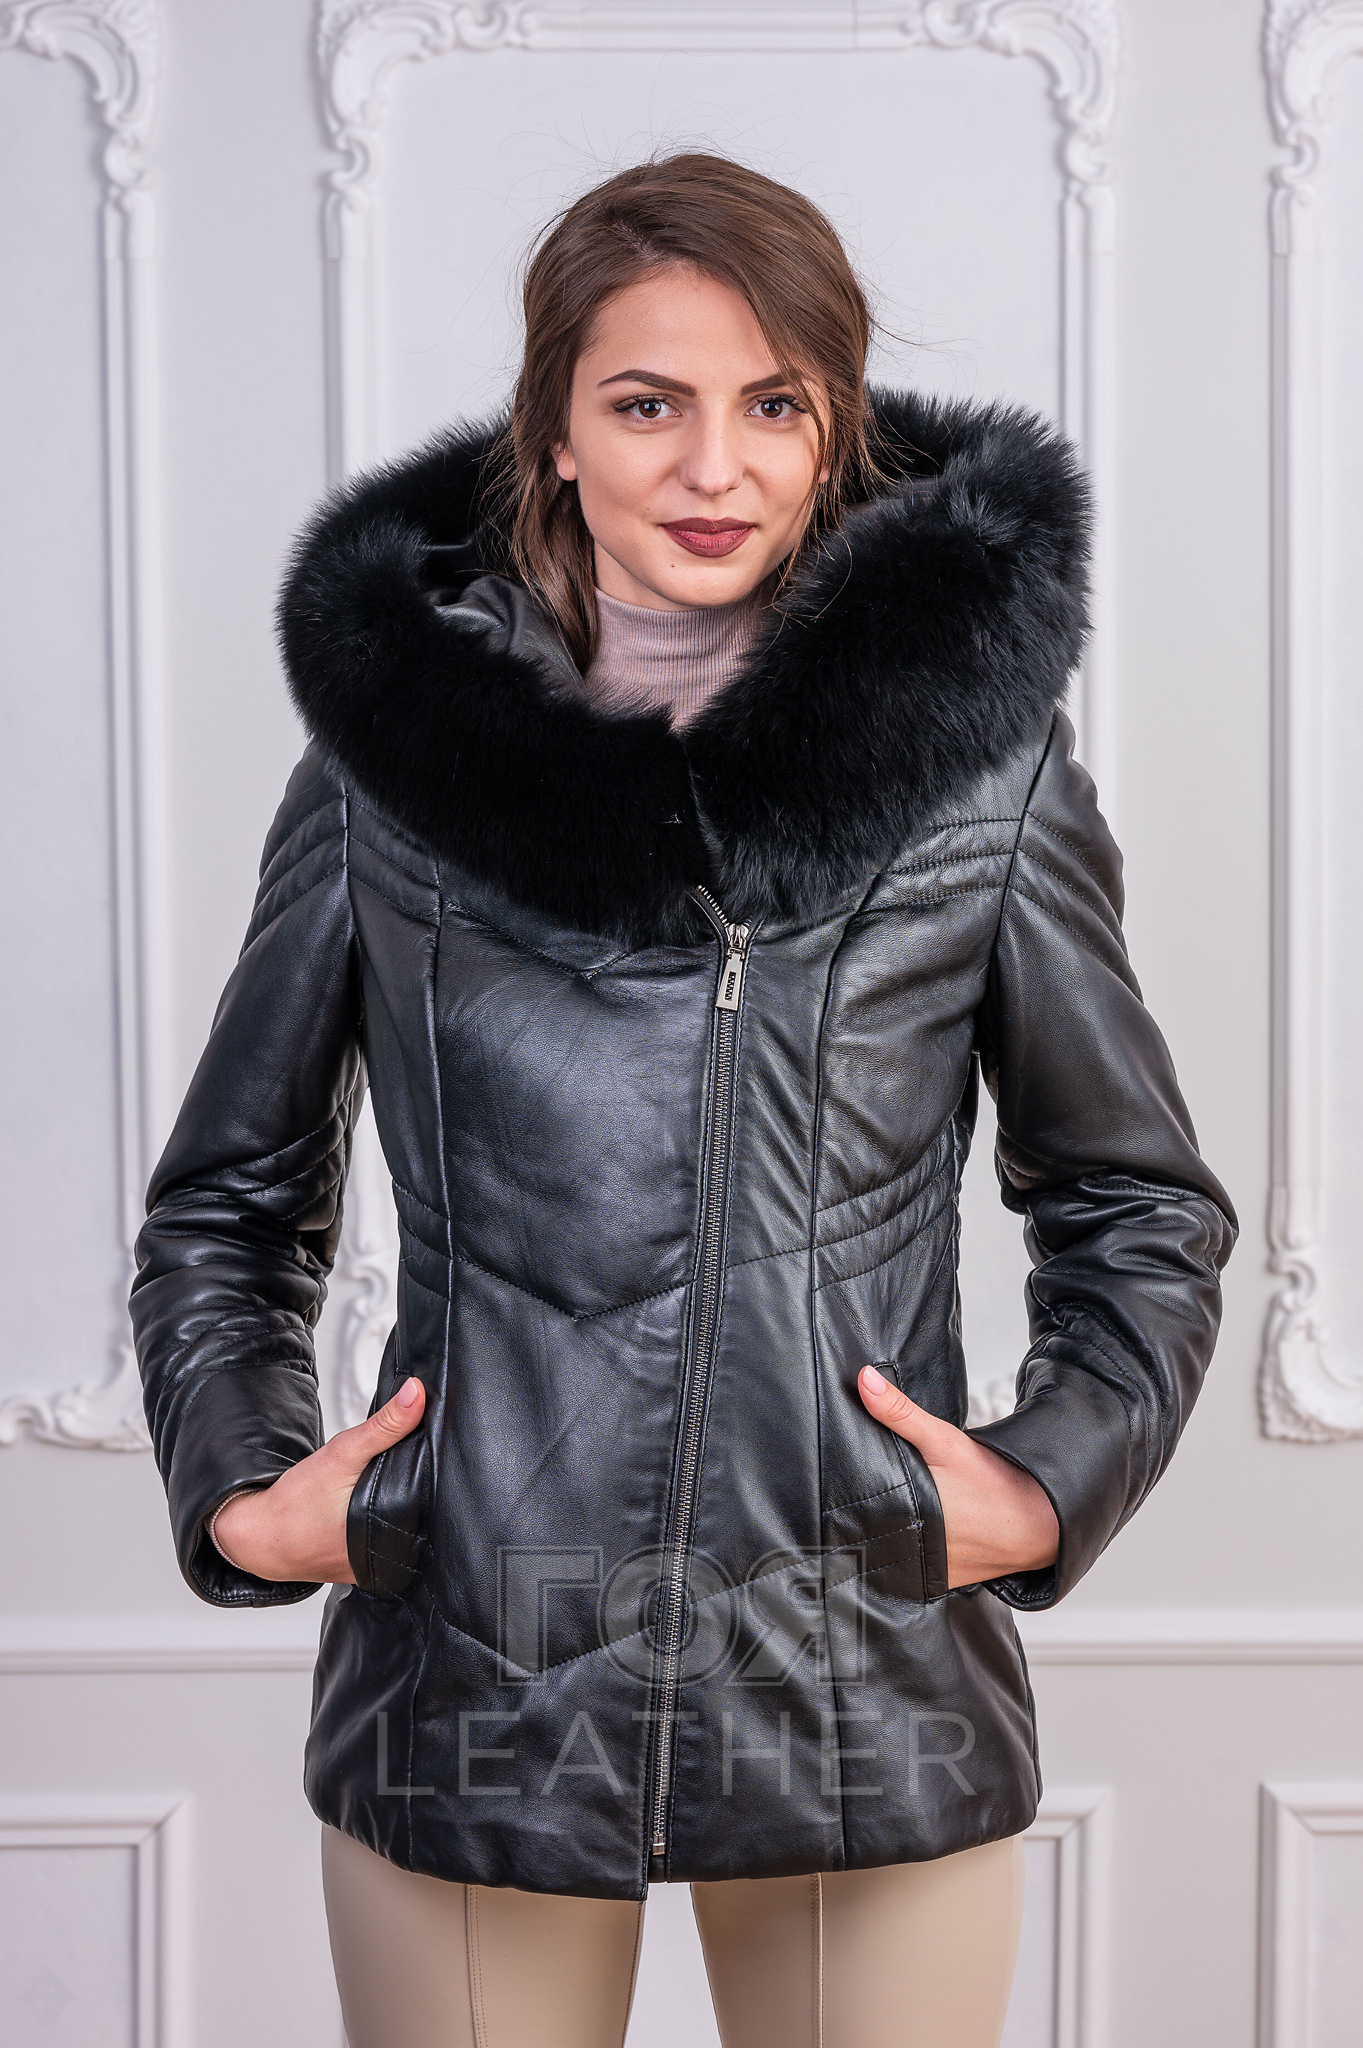 Дамска кожена Парка от ГОЯ Leather. Втален модел с качулка и гарнитура от лисица. Якето е изработено от 100% естествена кожа.